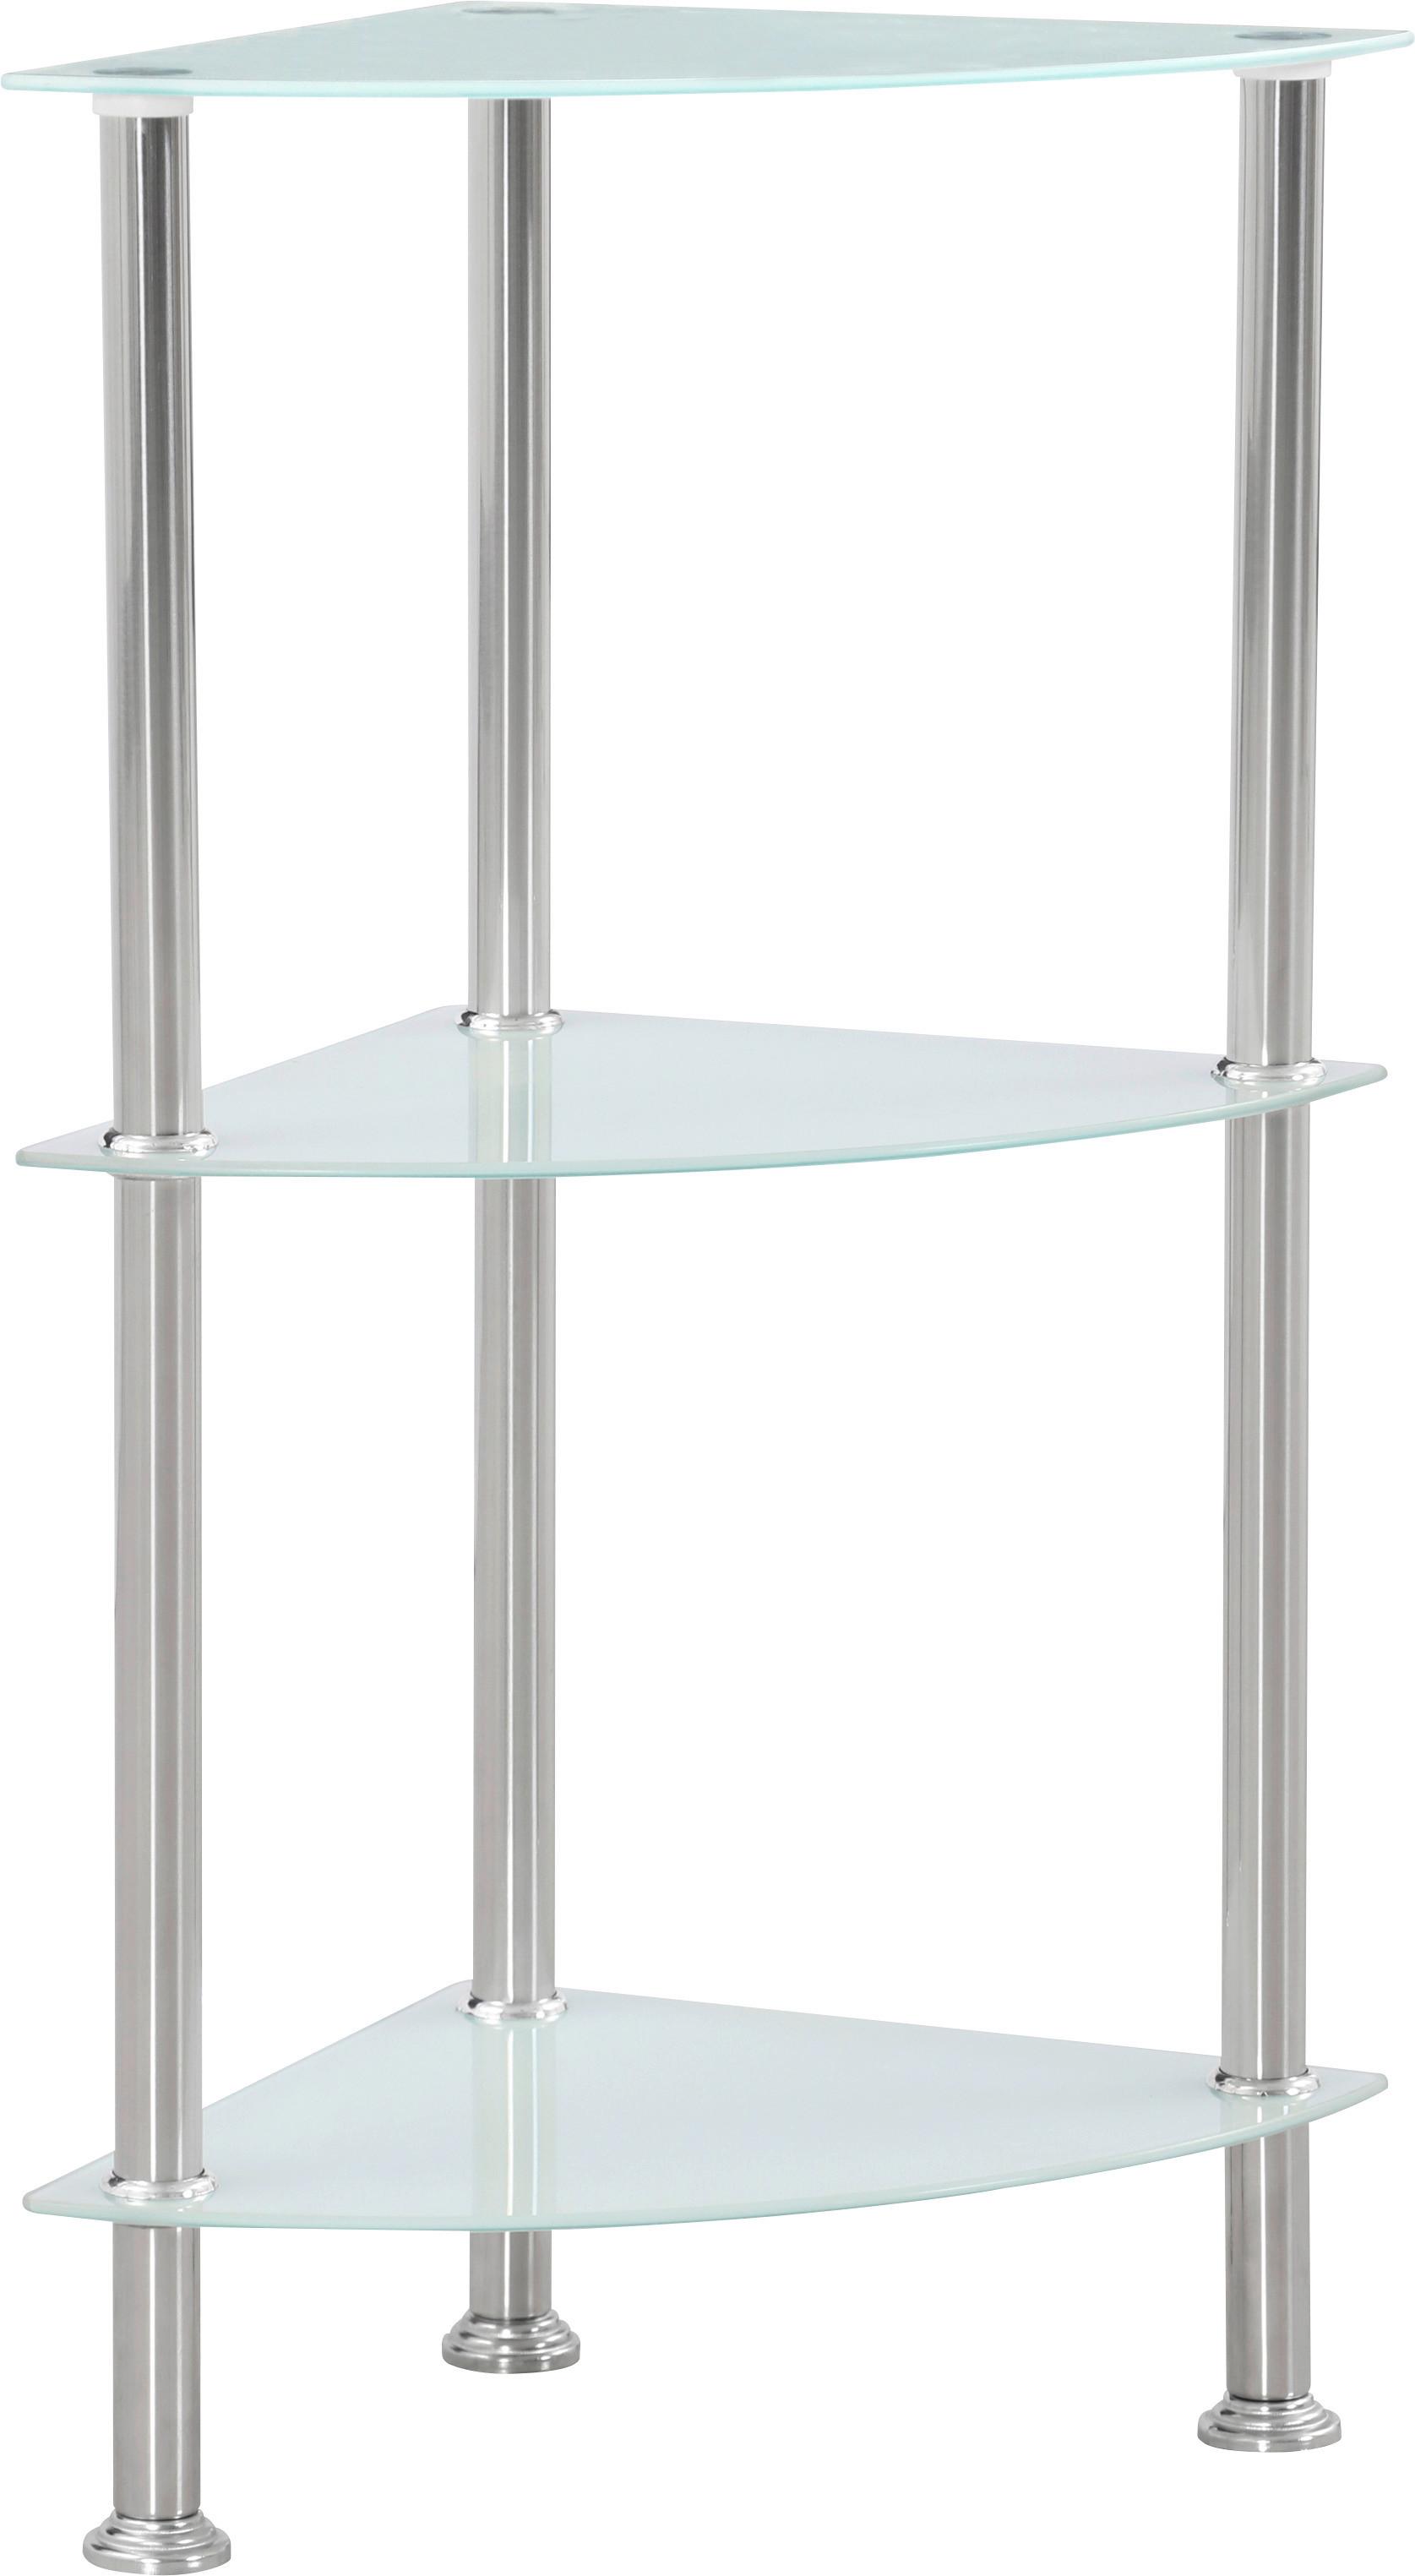 Eckregal mit Glasfächern Glare B 30cm, Edelstahl/Weiß - Edelstahlfarben/Weiß, MODERN, Glas/Metall (30/70/30cm) - Luca Bessoni